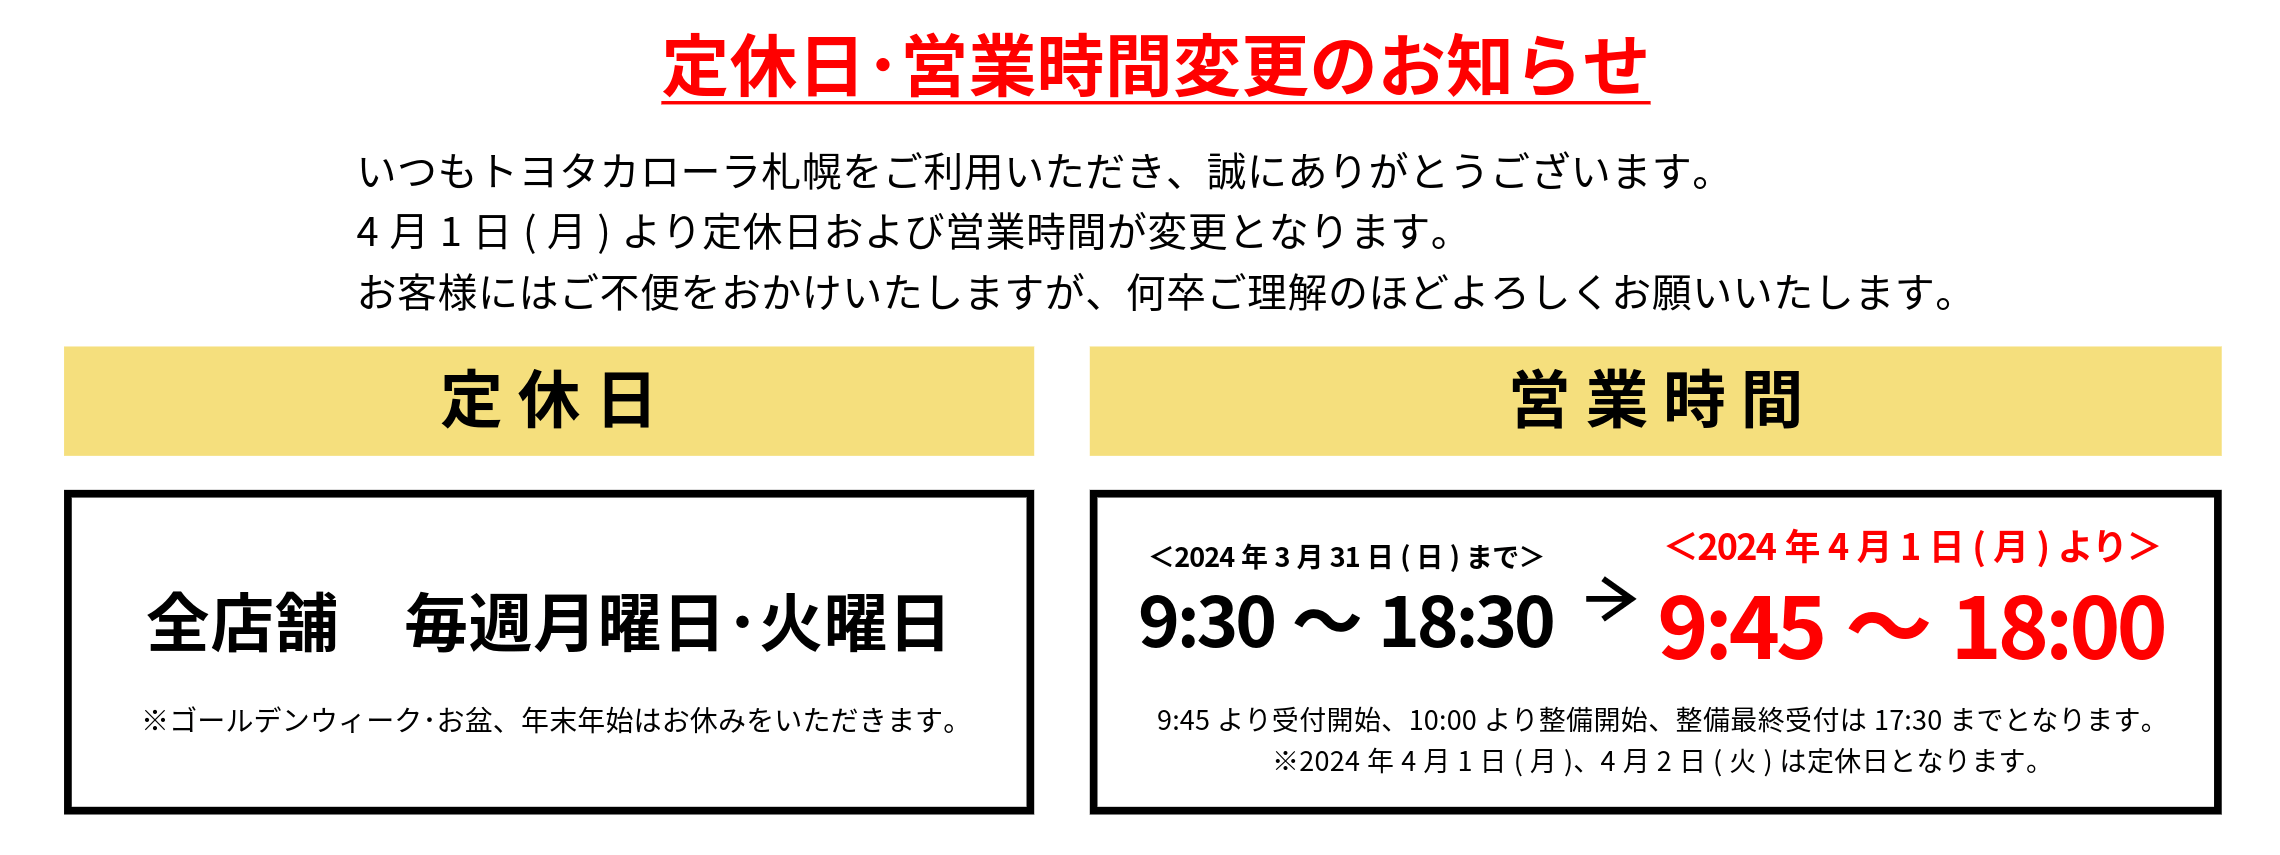 営業時間･定休日変更のお知らせ-9 (1)